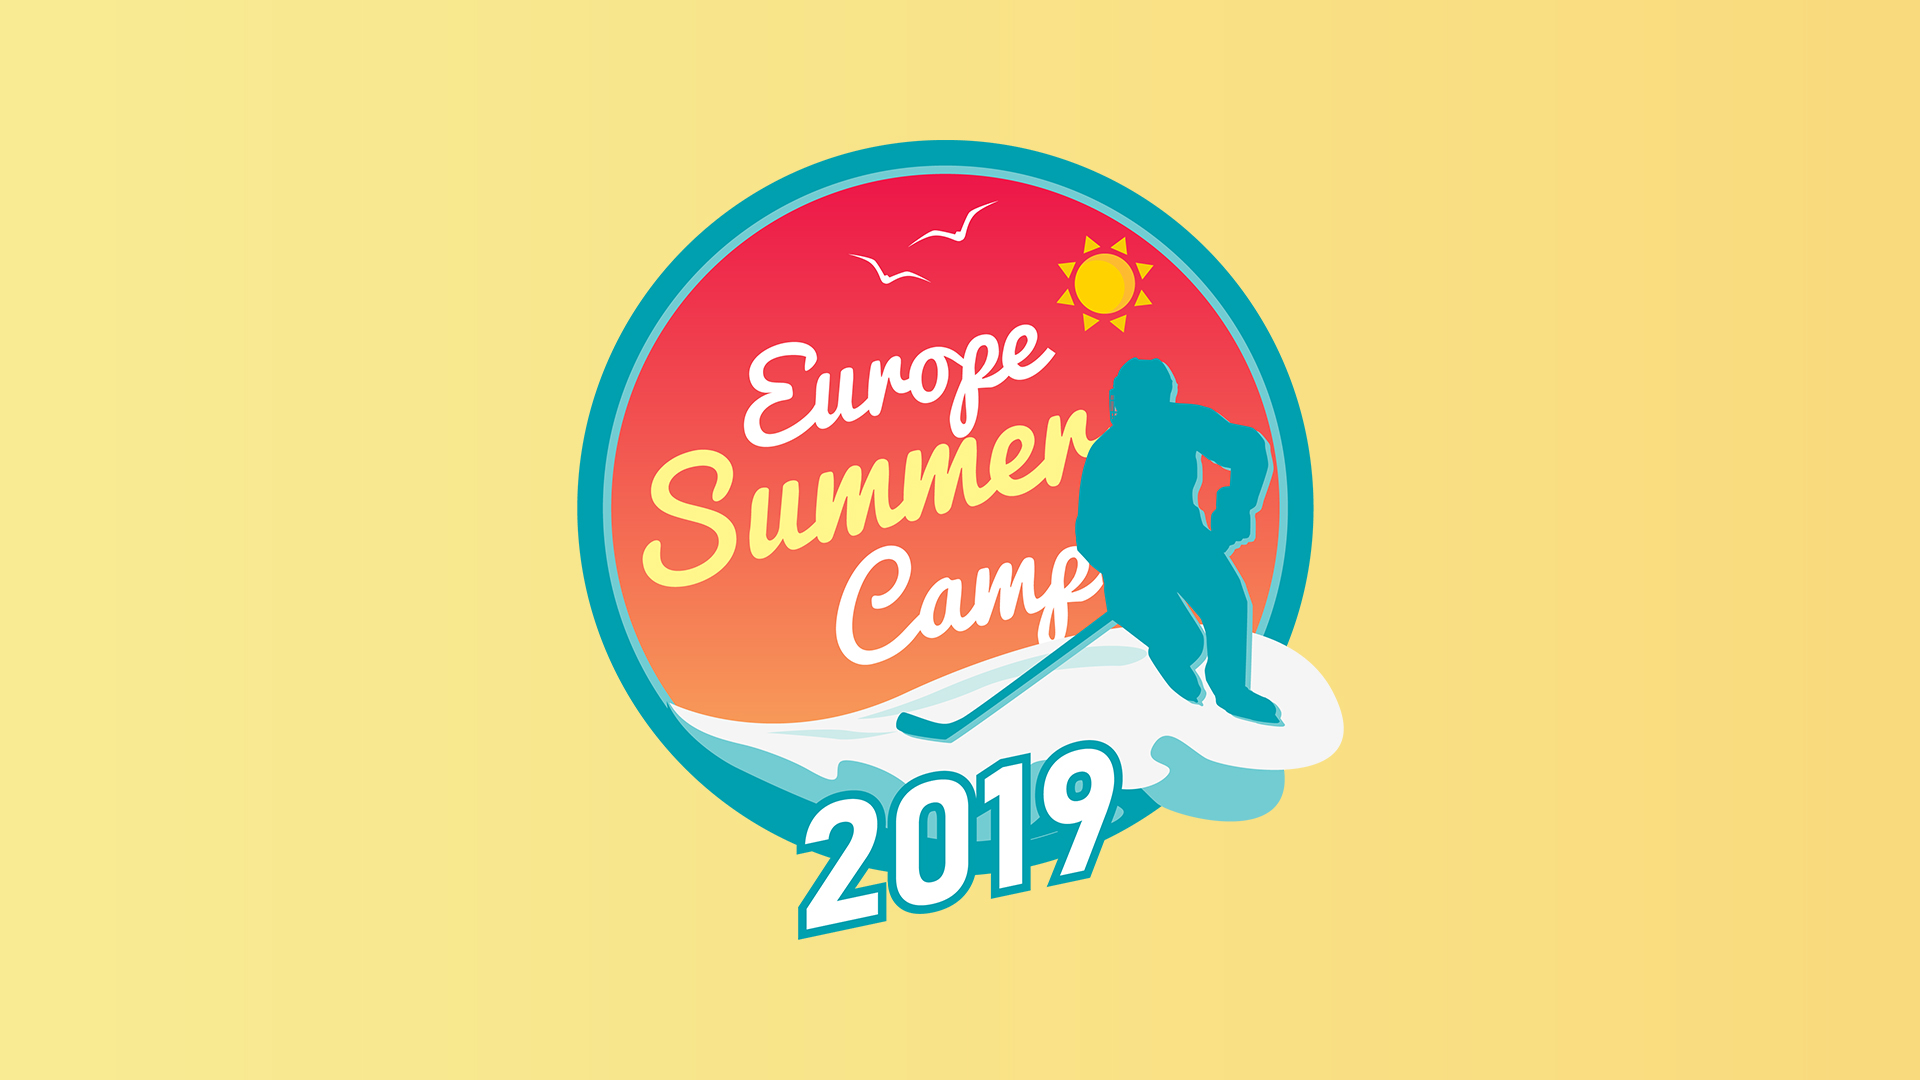 Elindult a Europe Summer Camp 2019 regisztrációja!